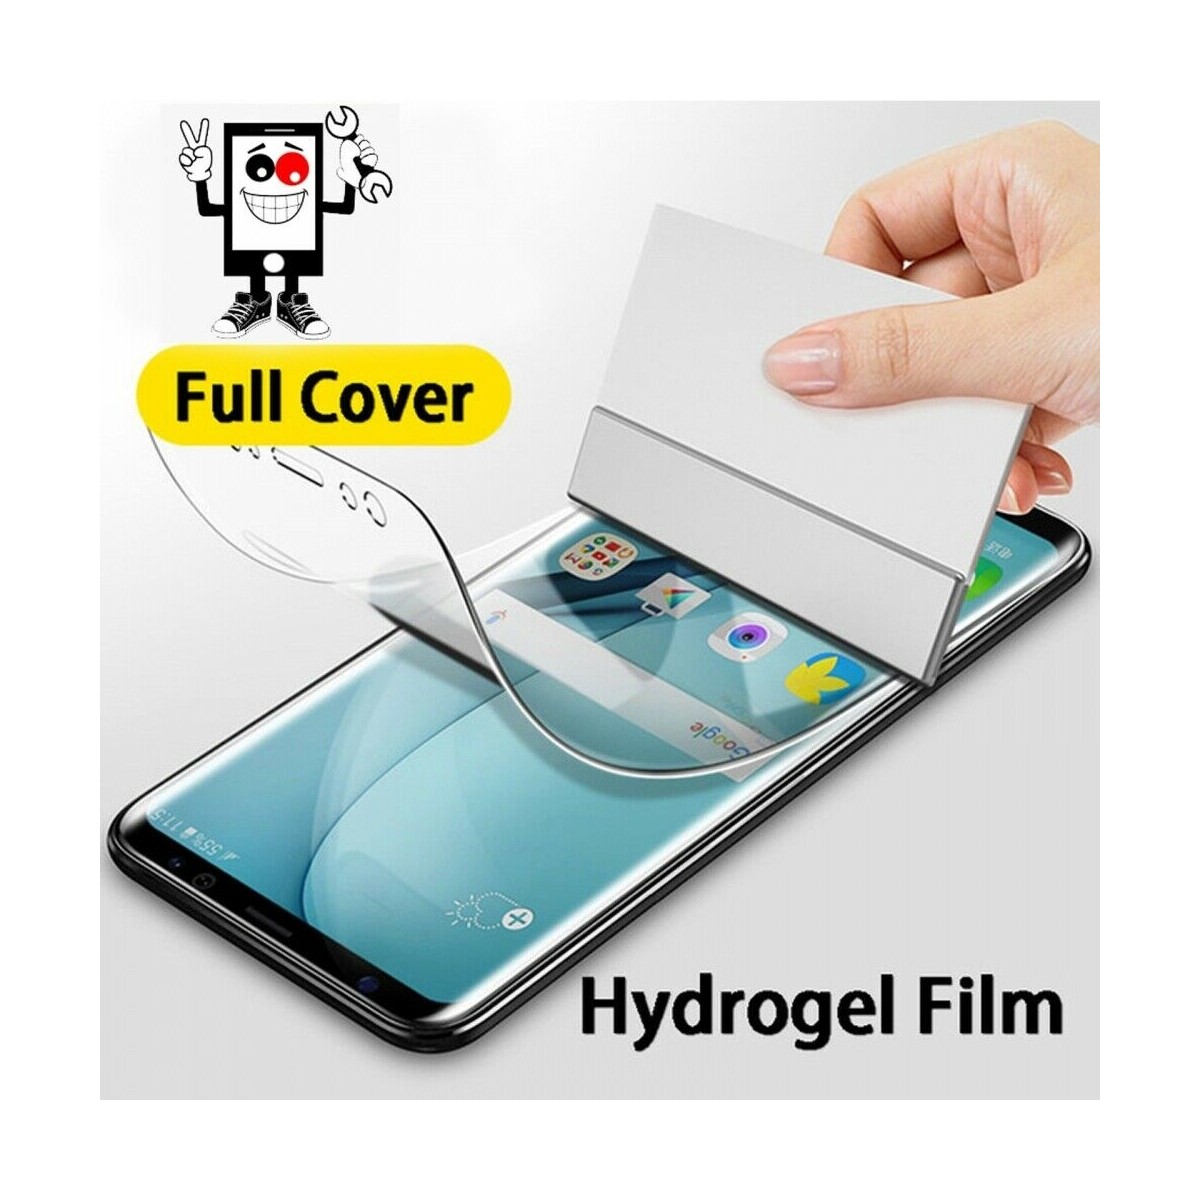 Protector de Pantalla Autorreparable de Hidrogel para LG X Style